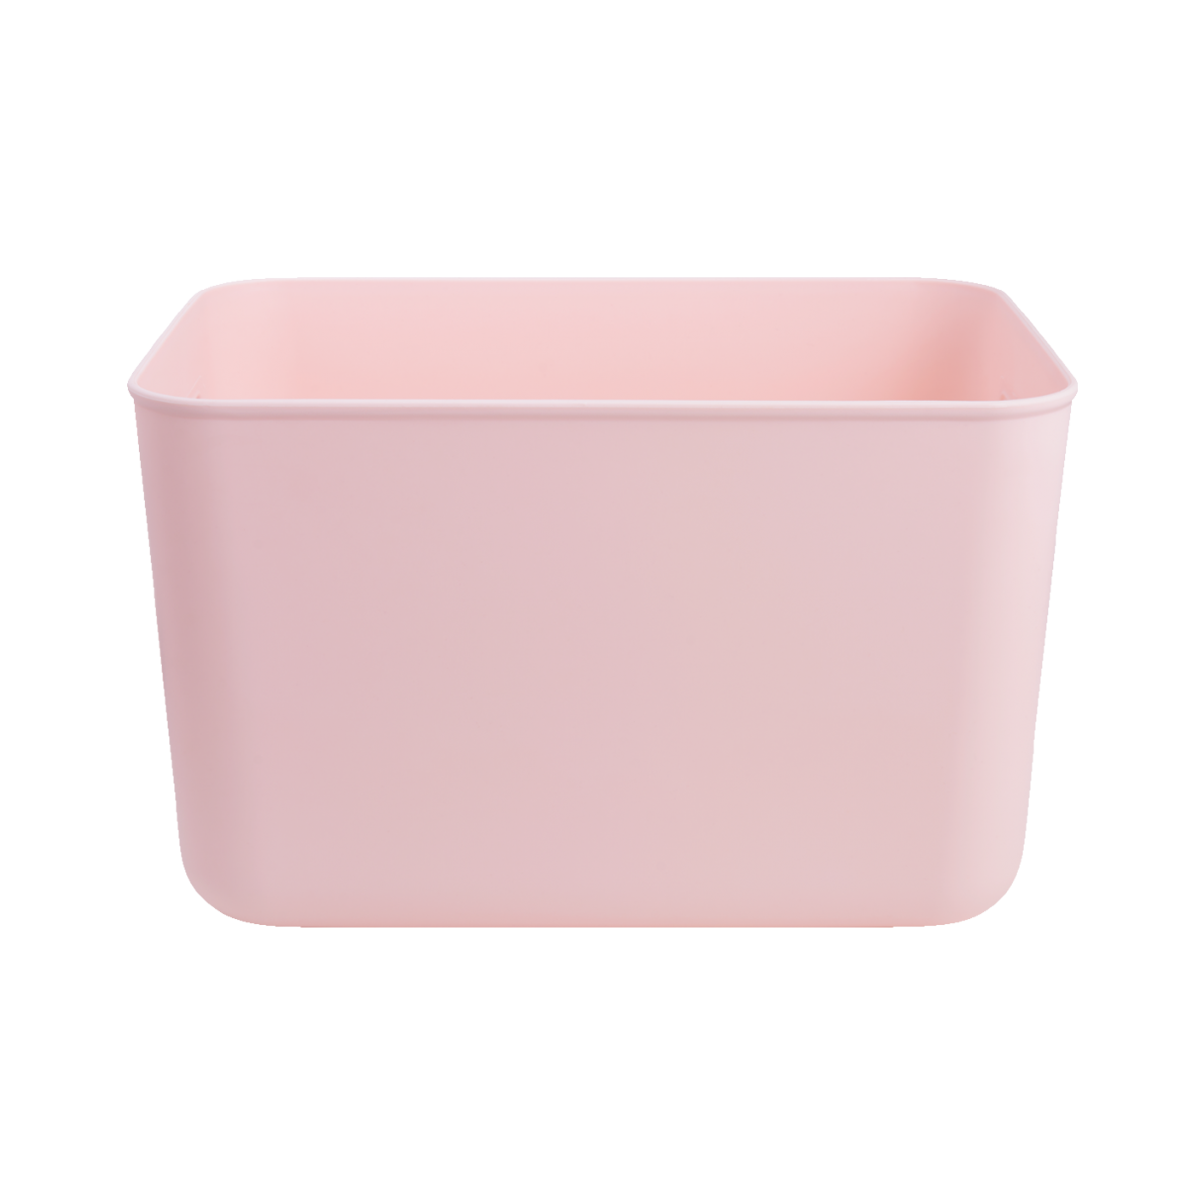 Ящик для хранения MVM пластиковый розовый 160x180x257 FH-11 S LIGHT PINK